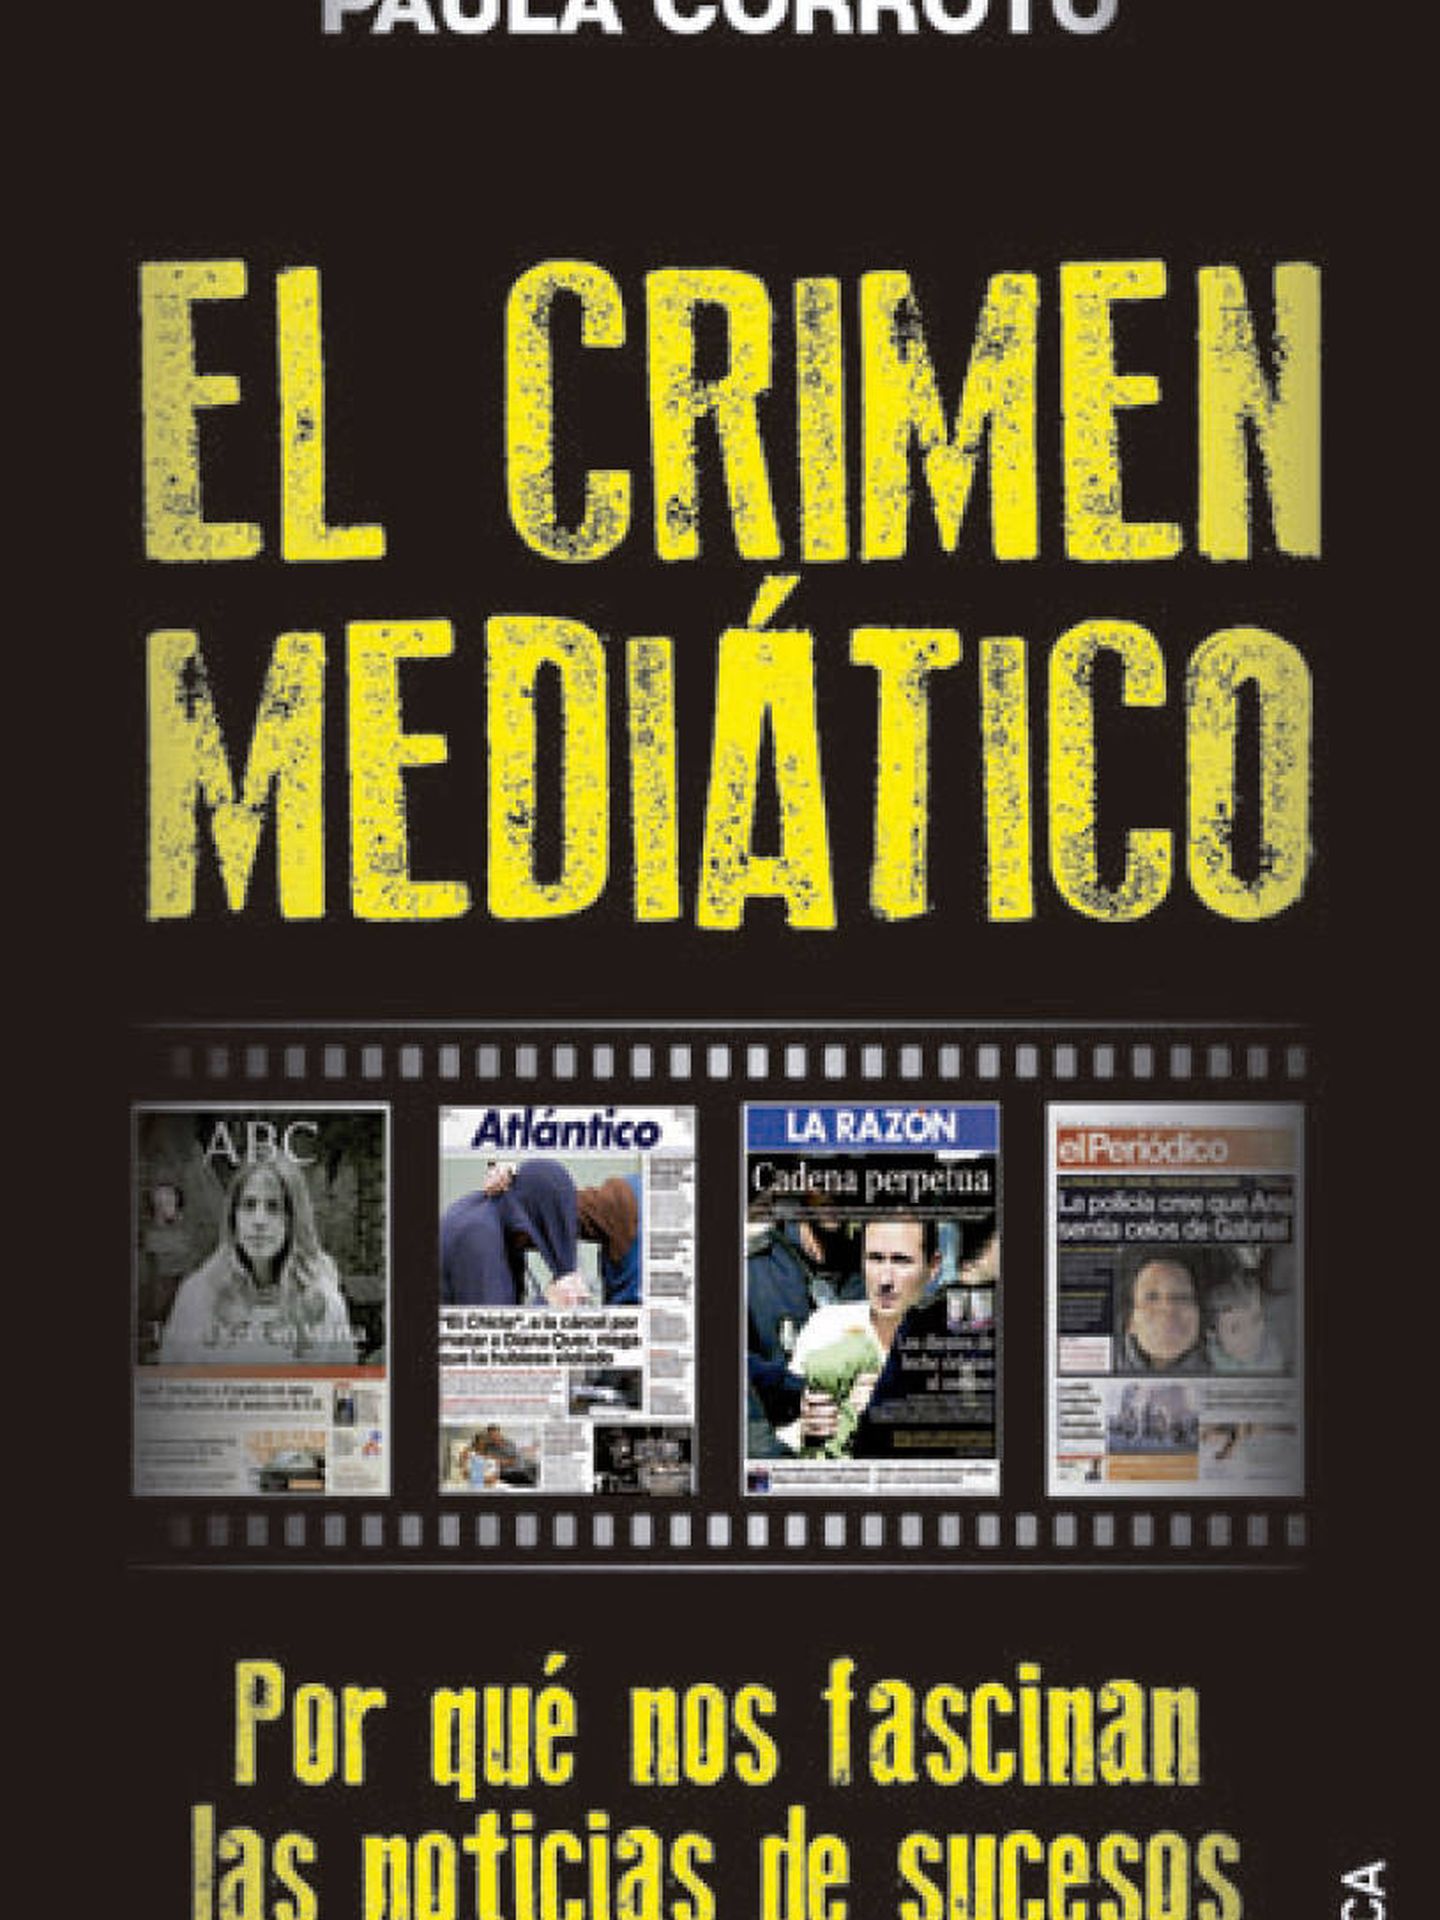 'El crimen mediático'